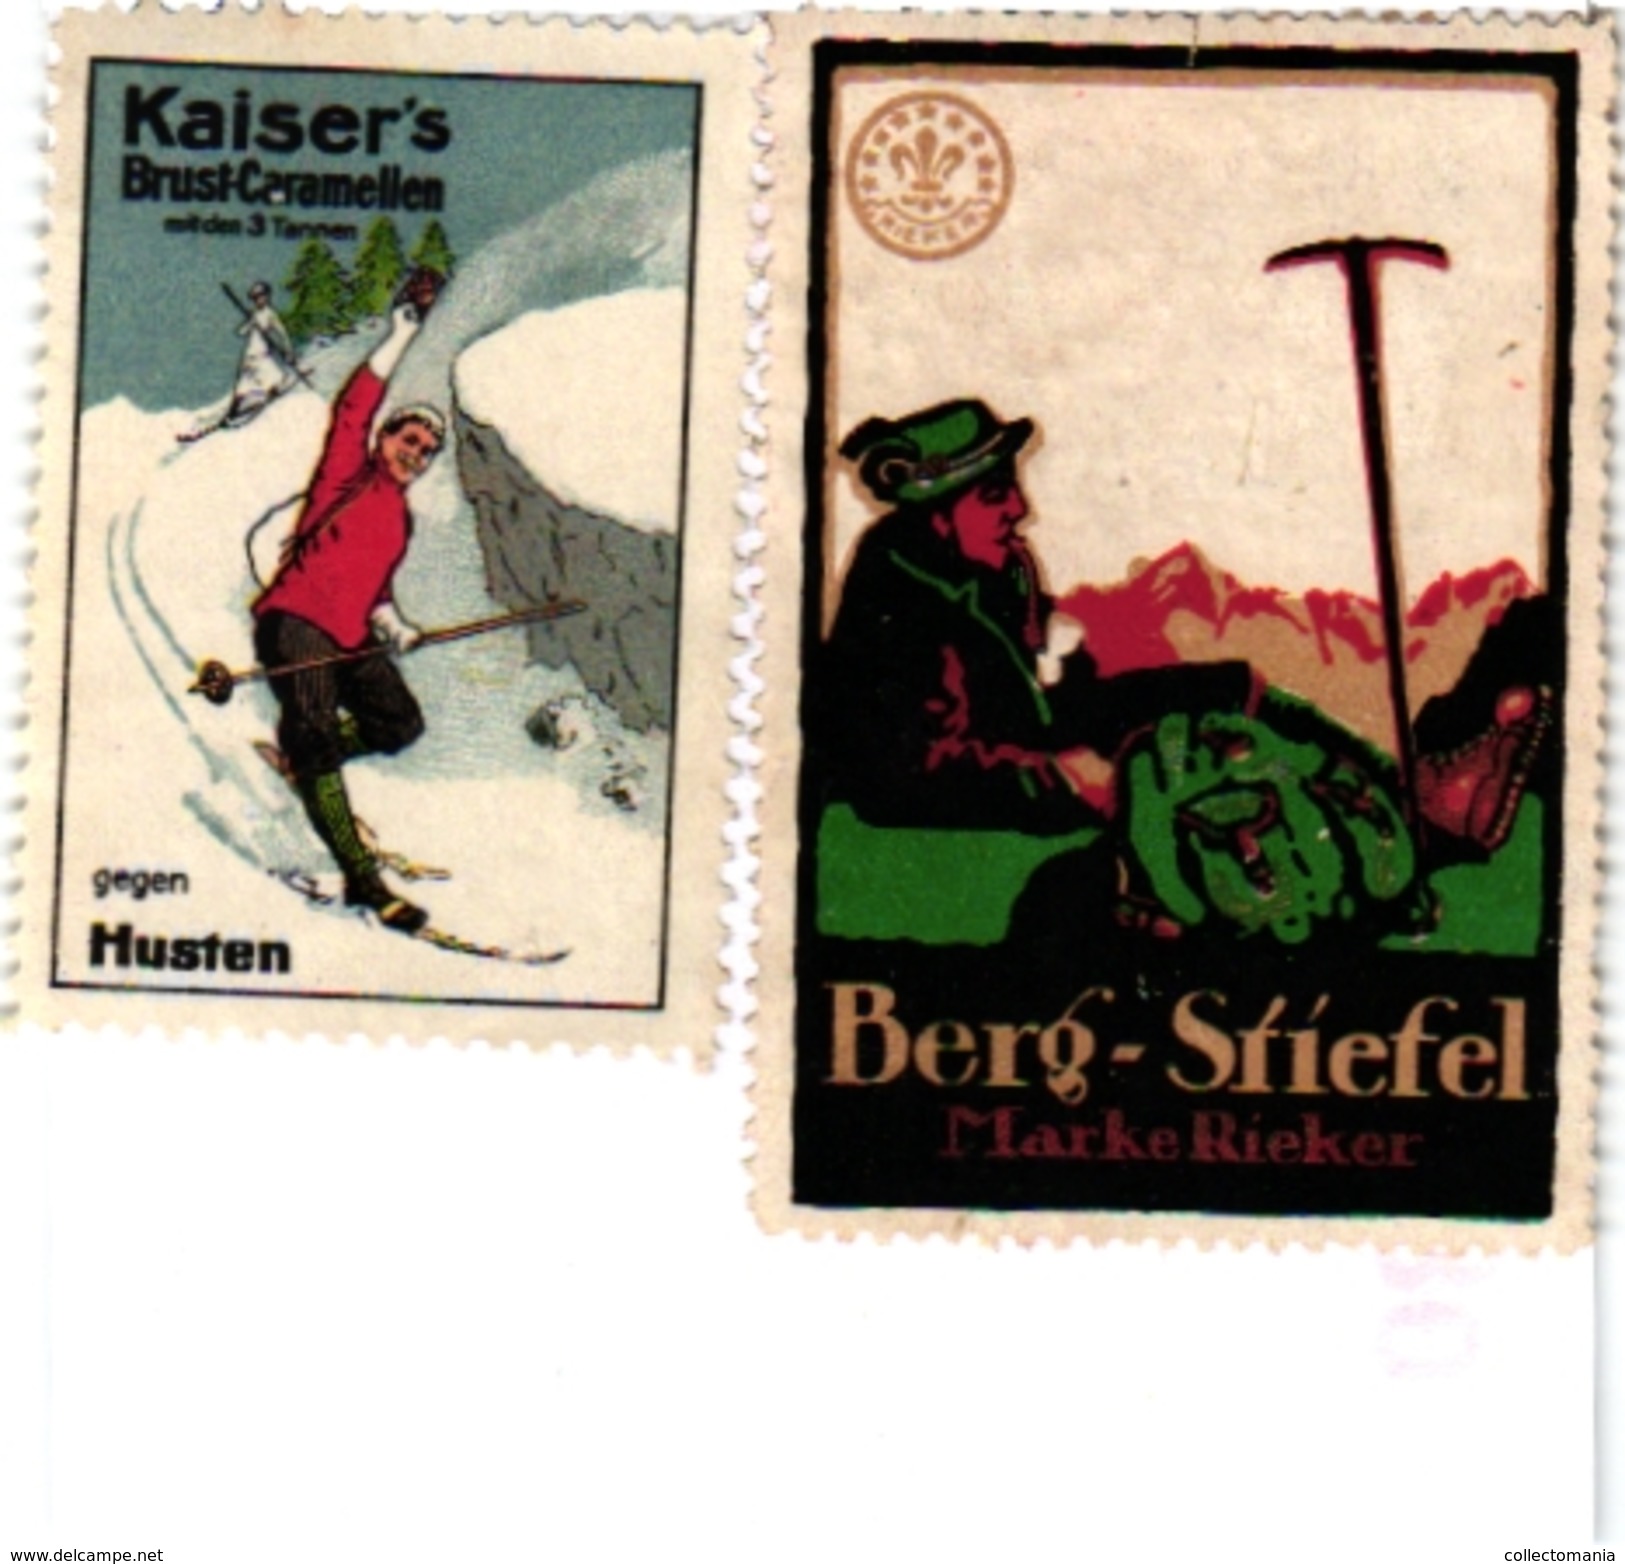 8 Poster Stamp Cinderella Reklame Marke Pub  ALPINISME Mountaineering Skiing Montagne =gebirgte Berg Climbing Klimmen VG - Sports D'hiver